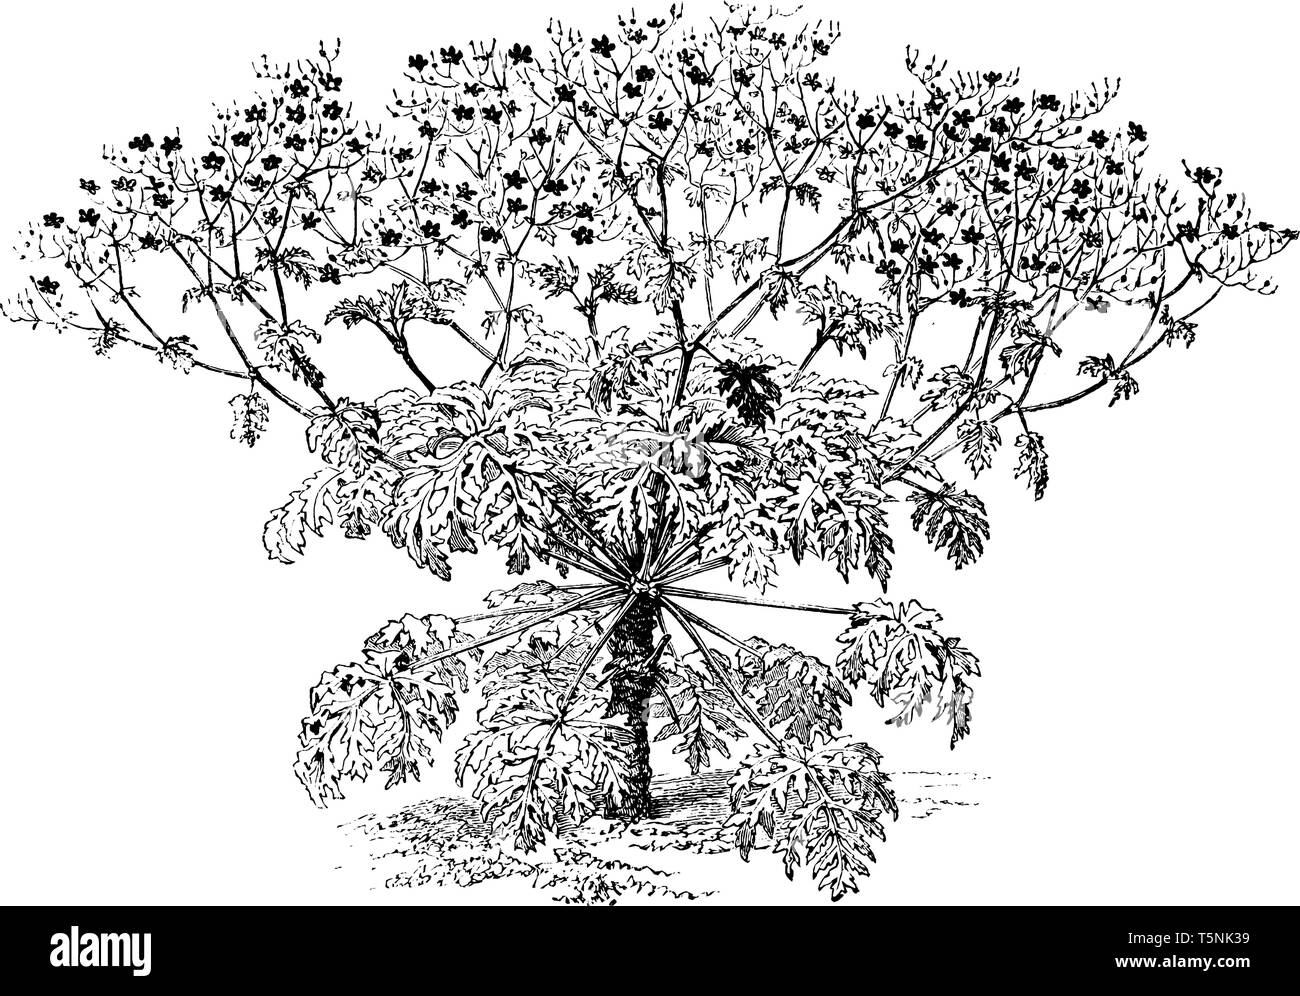 Une photo montre des Anemonaefolium géranium, communément connu sous le nom de projet de loi. grues Ses fleurs ont 5 pétales et sont de couleur rouge violacé. Les feuilles sont longues Illustration de Vecteur